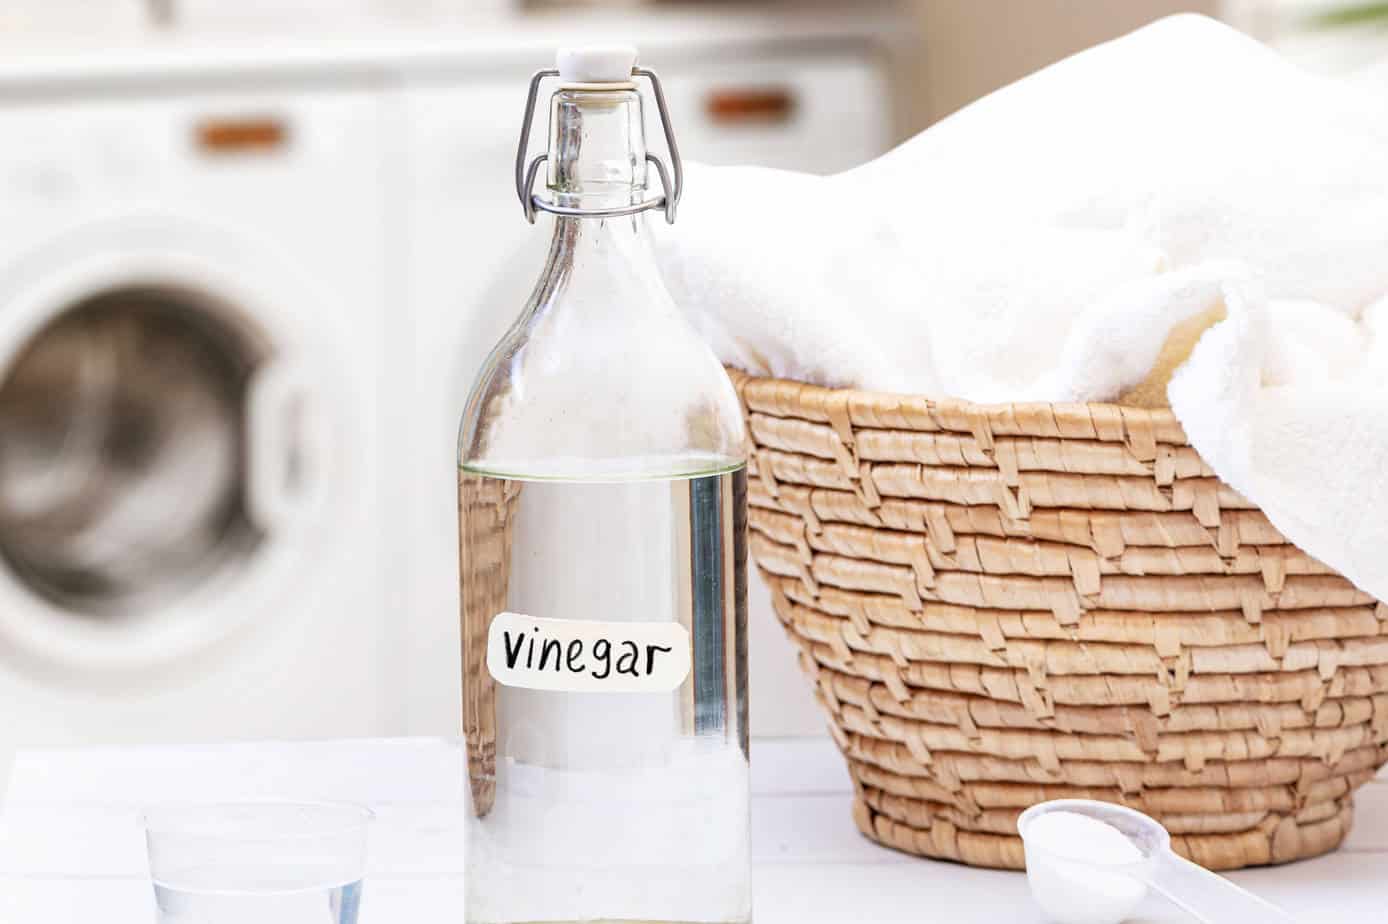 Use white vinegar to whiten your clothes